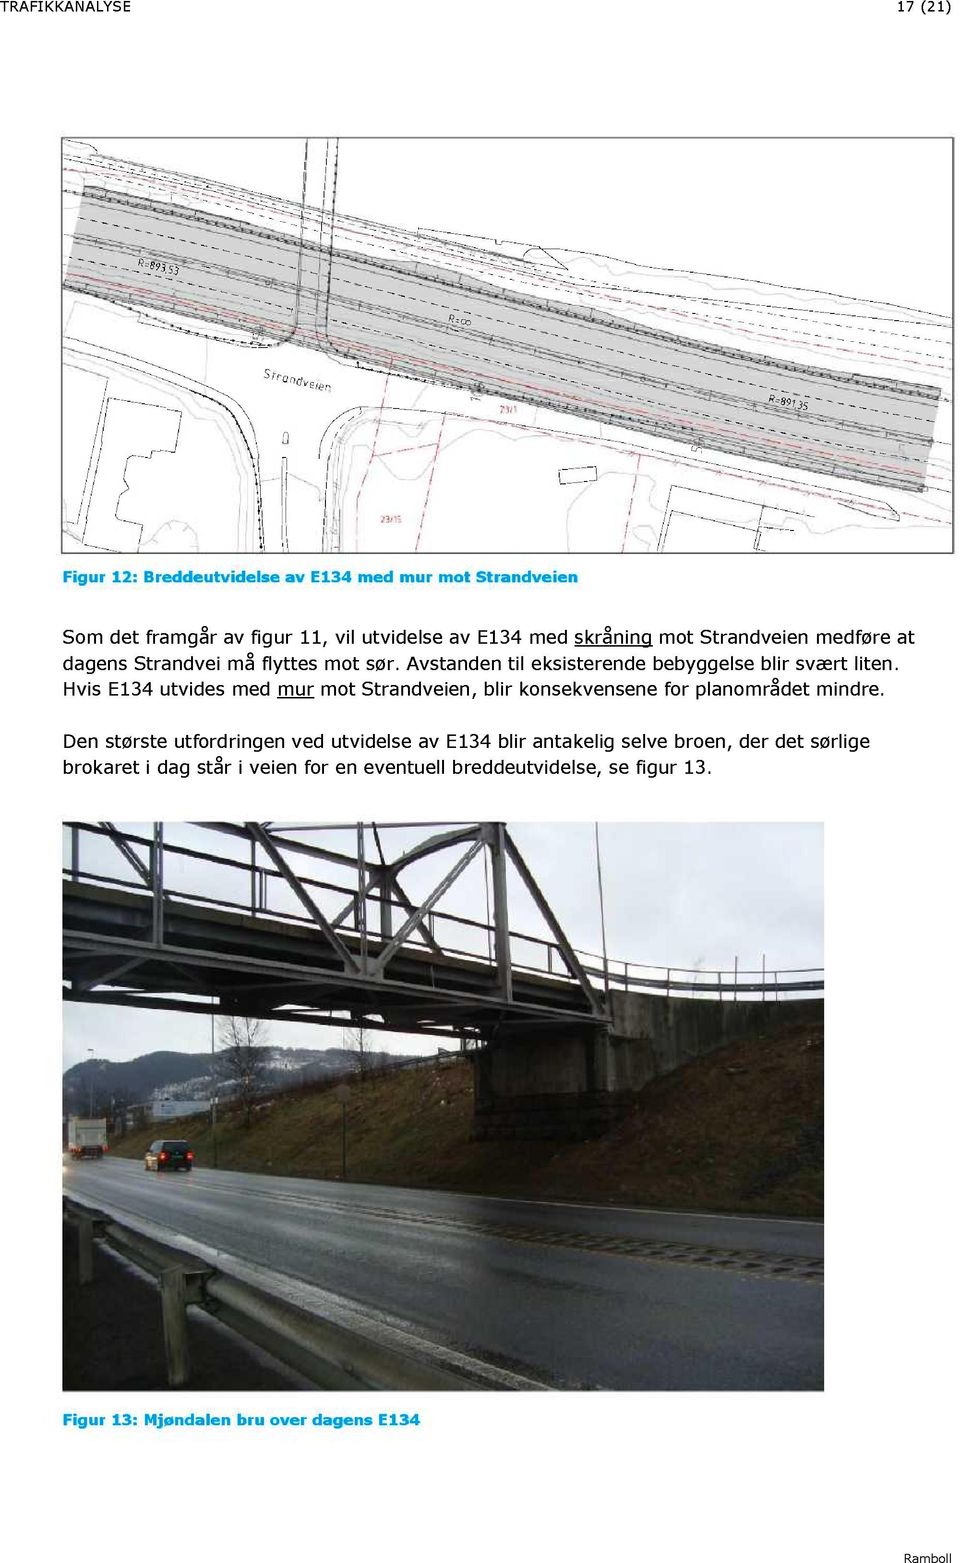 Hvis E134 utvides med mur mot Strandveien, blir konsekvensene for planområdet mindre.